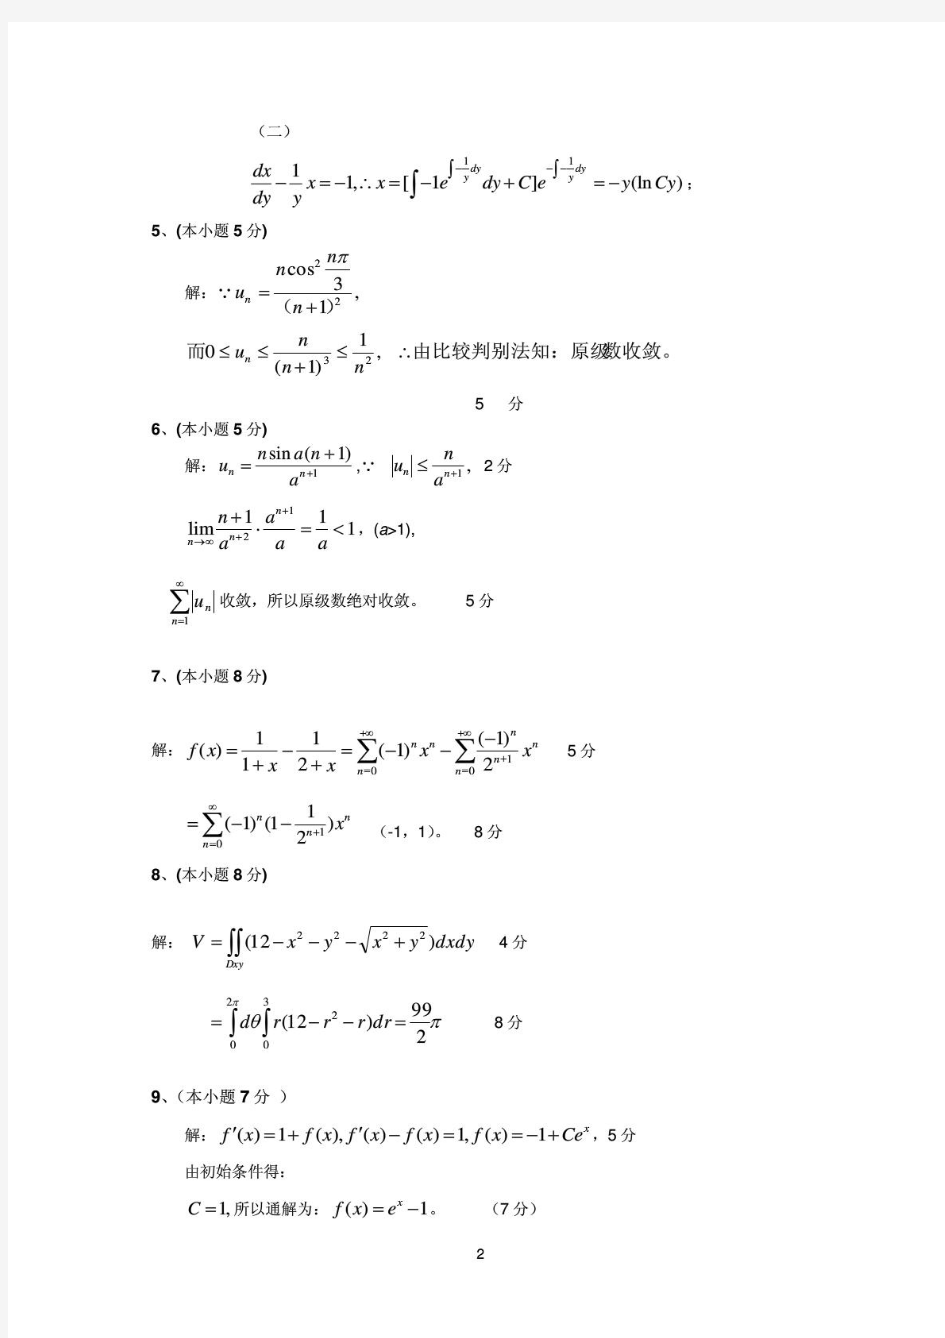 上海海事大学高等数学B(二)2009-2010(B)解答